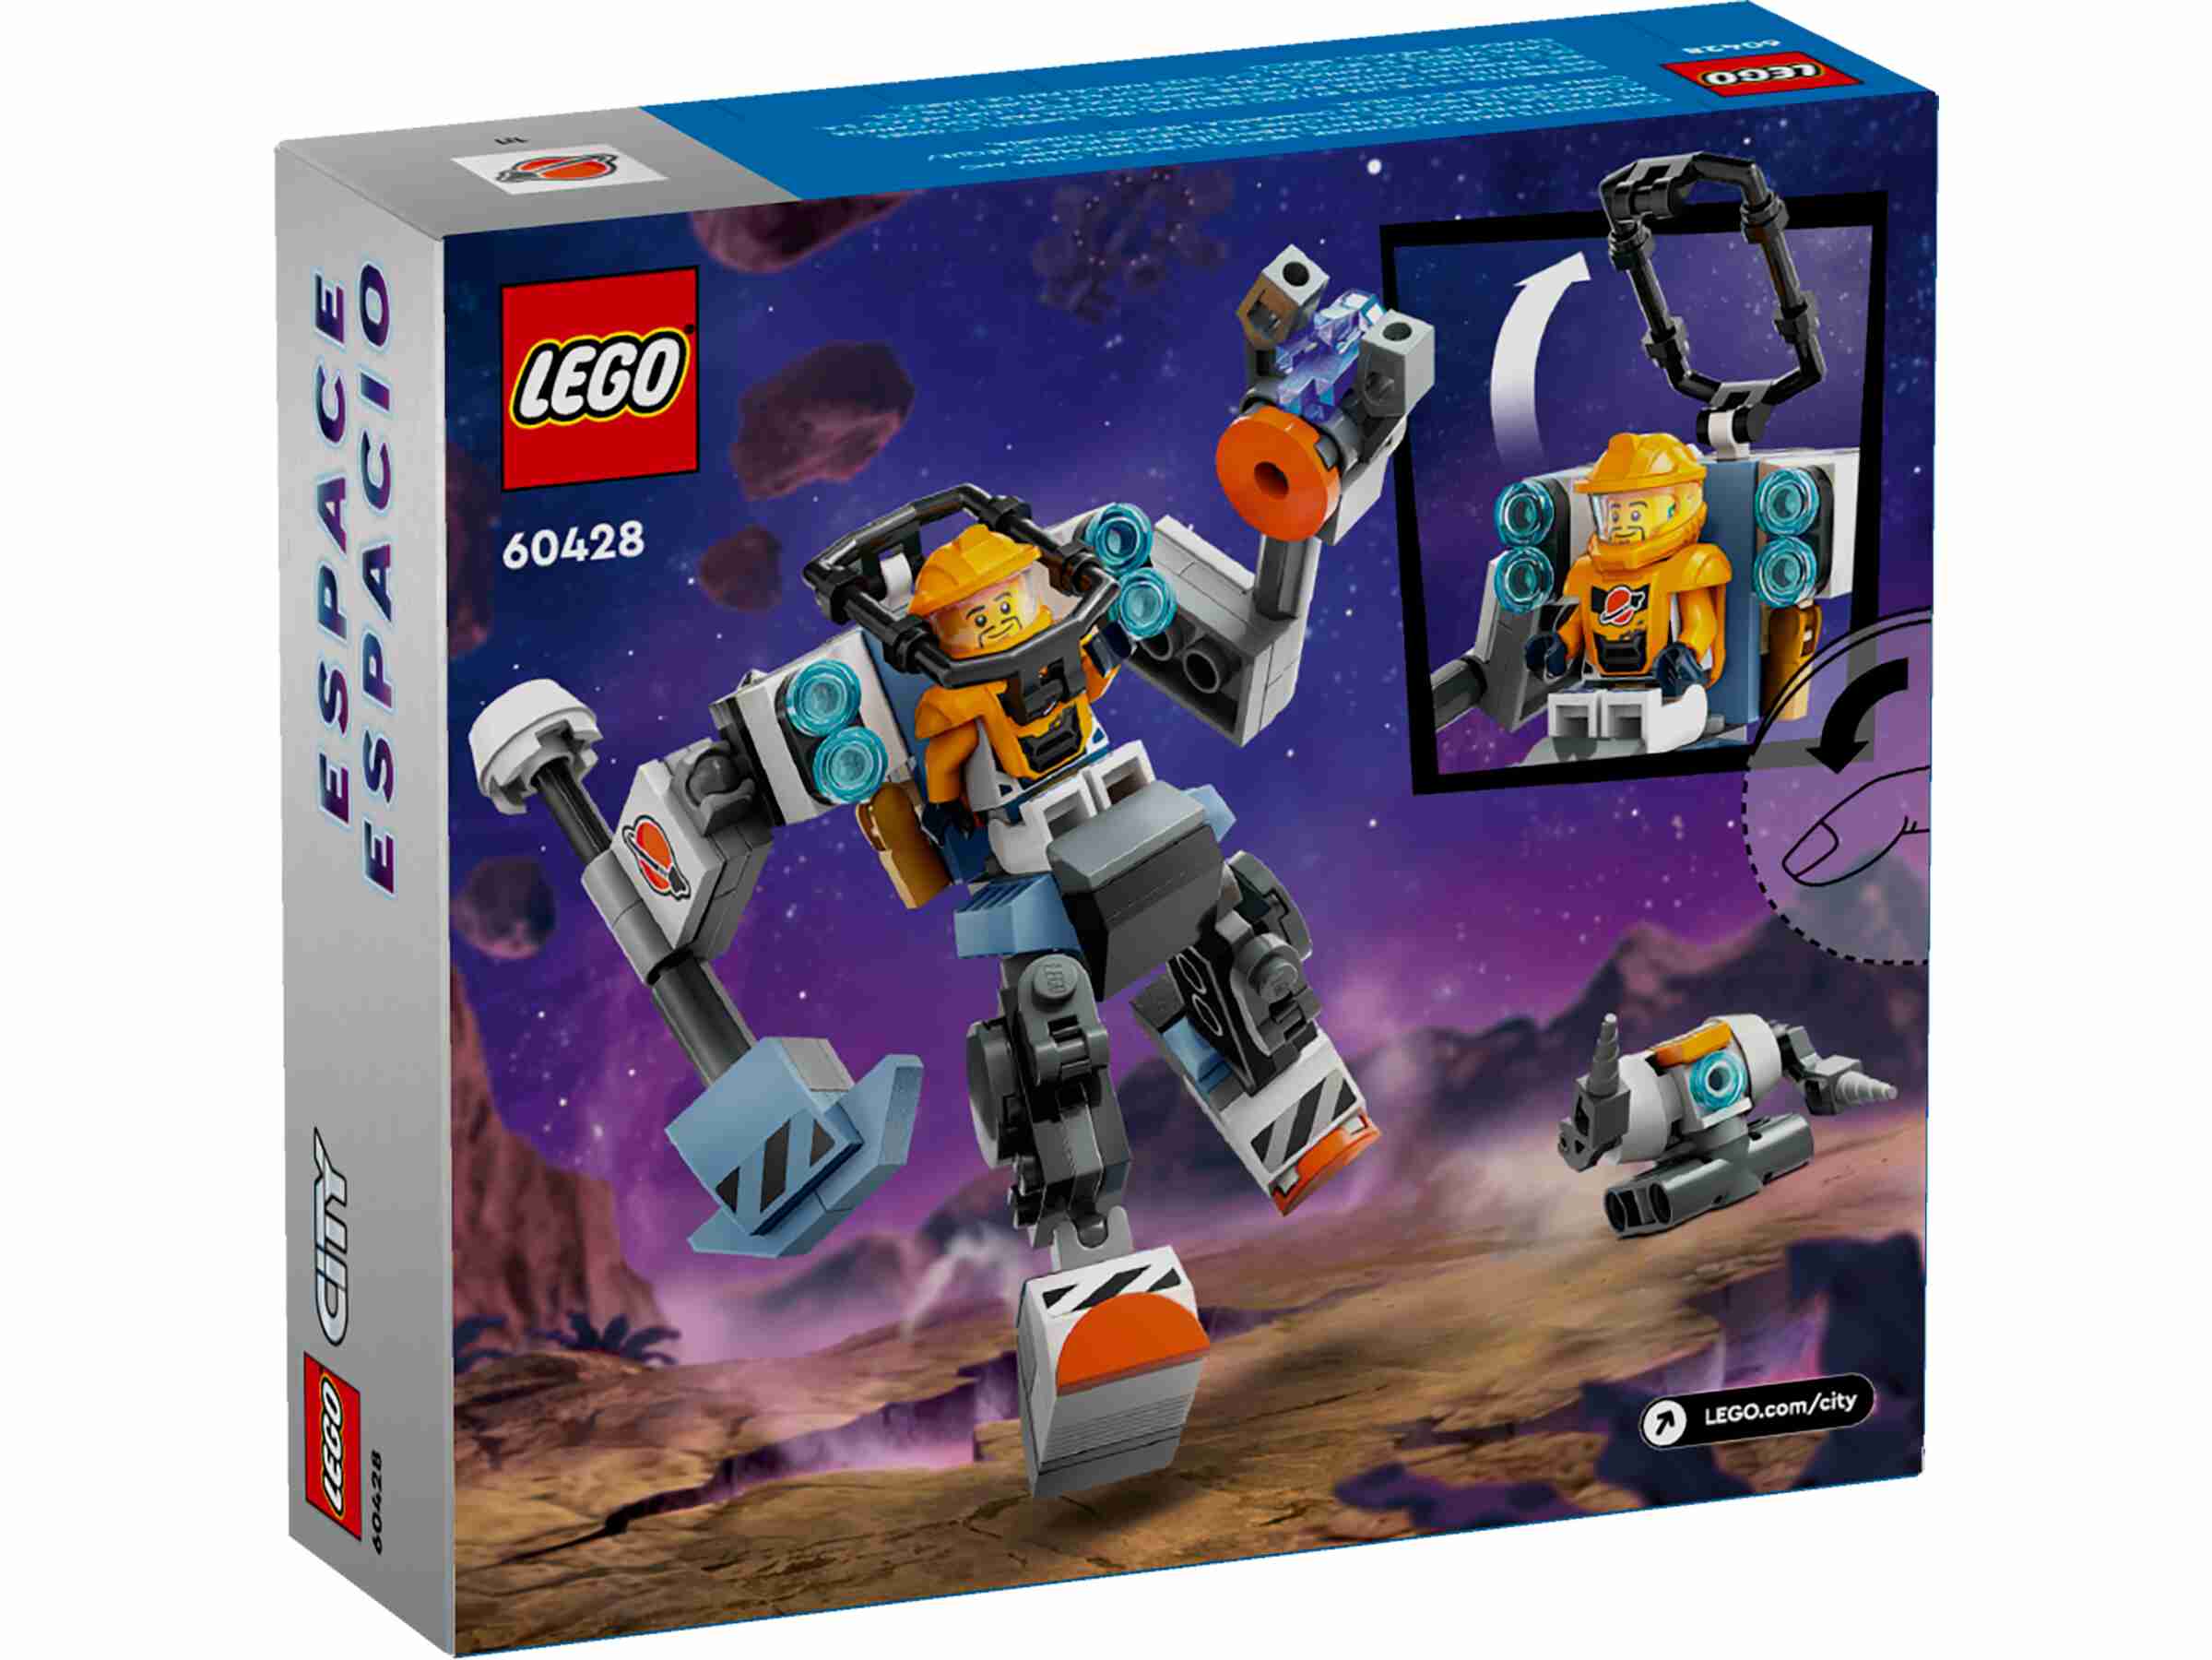 LEGO 60428 City Weltraum-Mech, 1 Minifigur, Planetenkulisse, Weltraum-Bauroboter